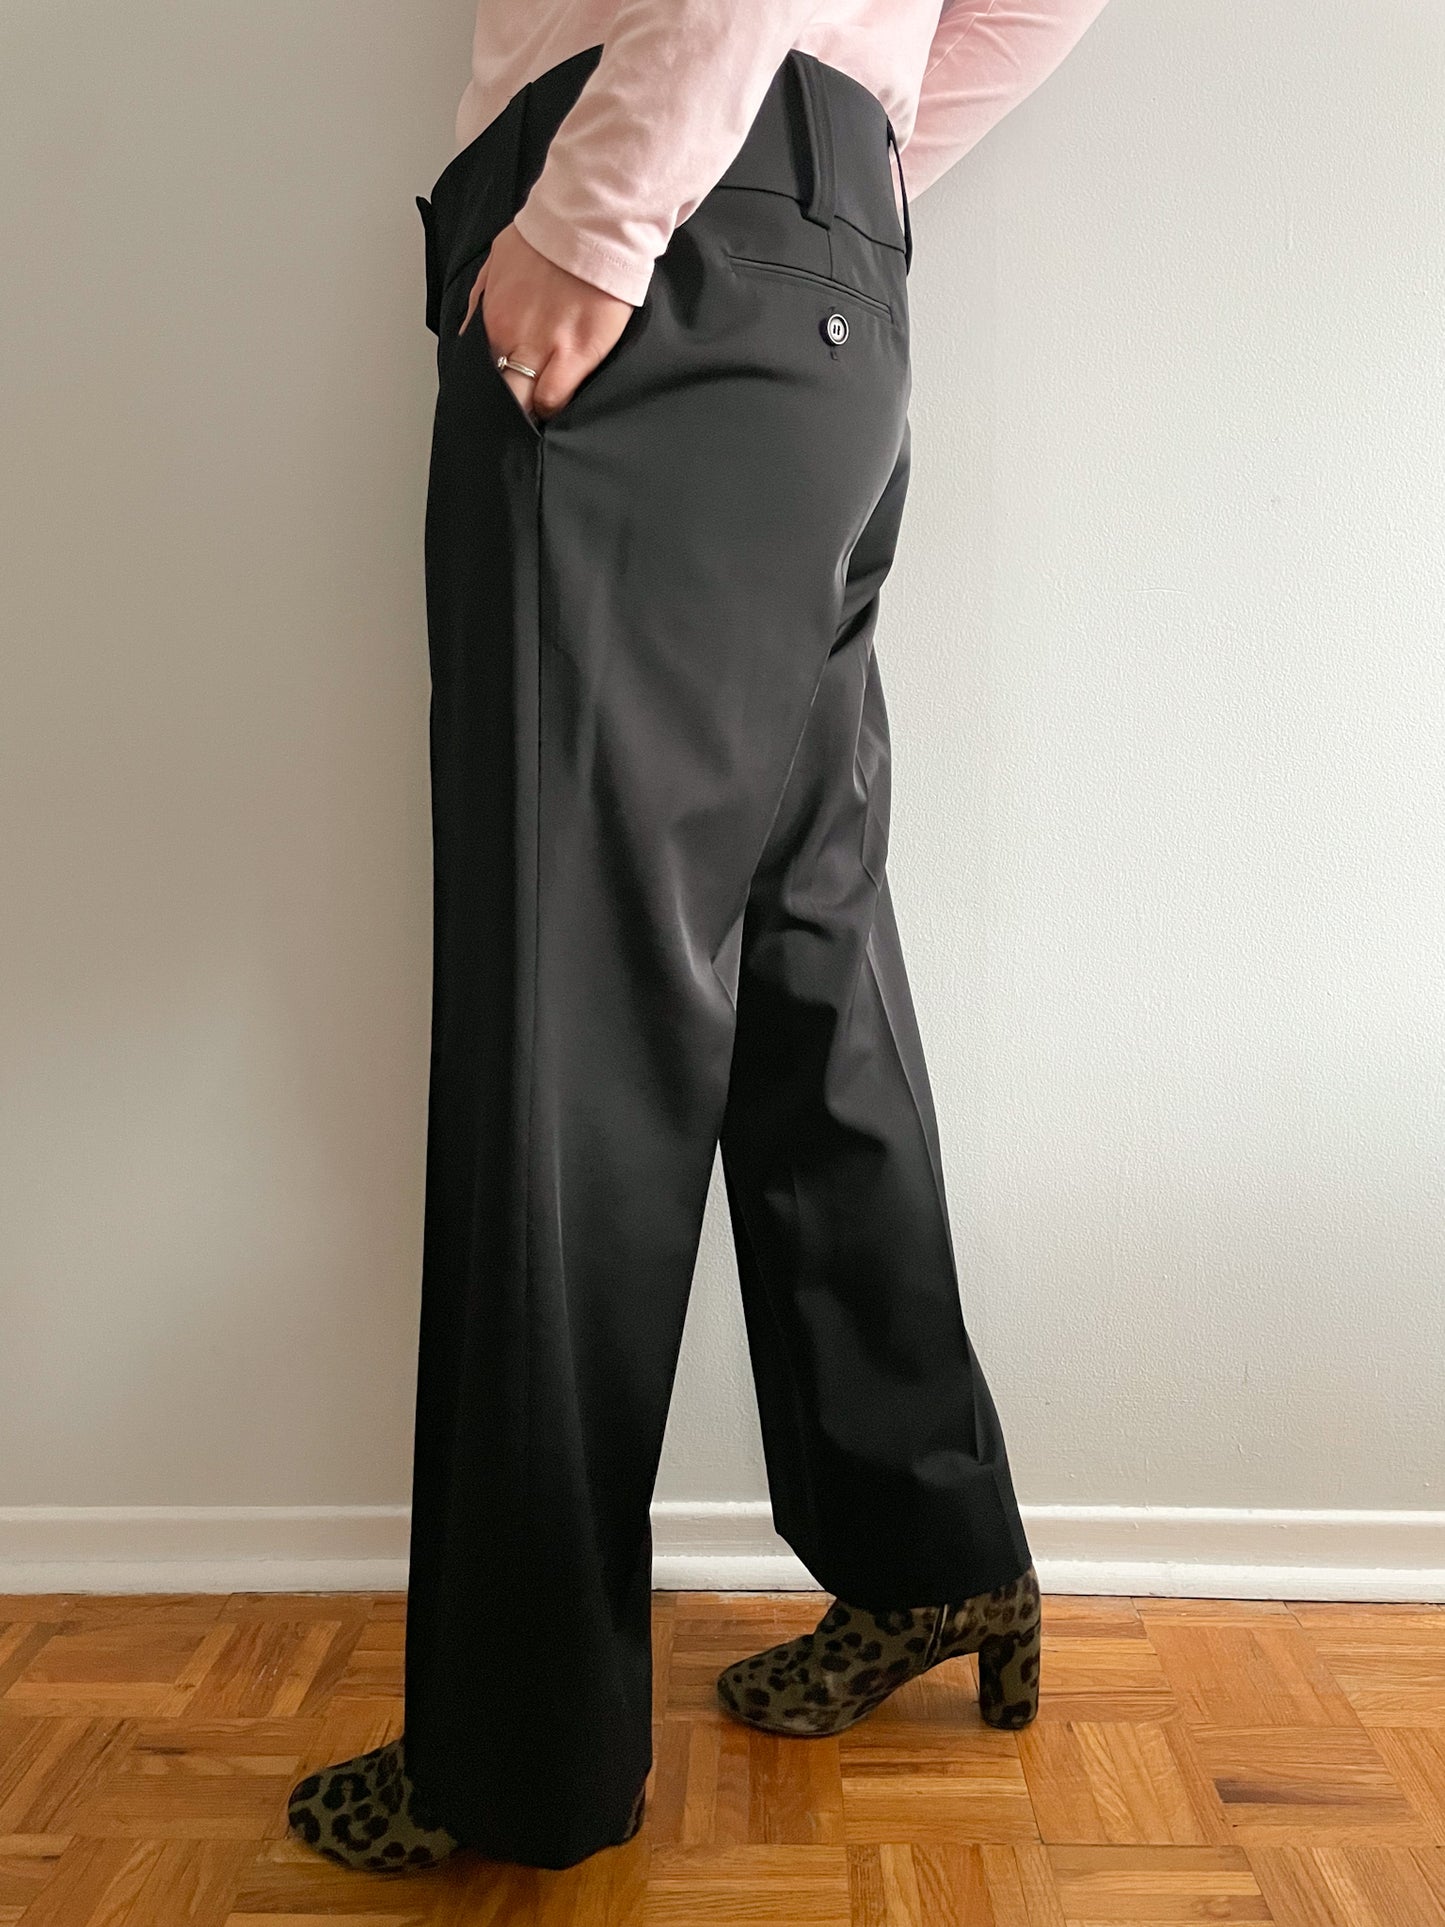 Marc Aurel Black Piped Wide Leg High Rise Trouser Pants - XL